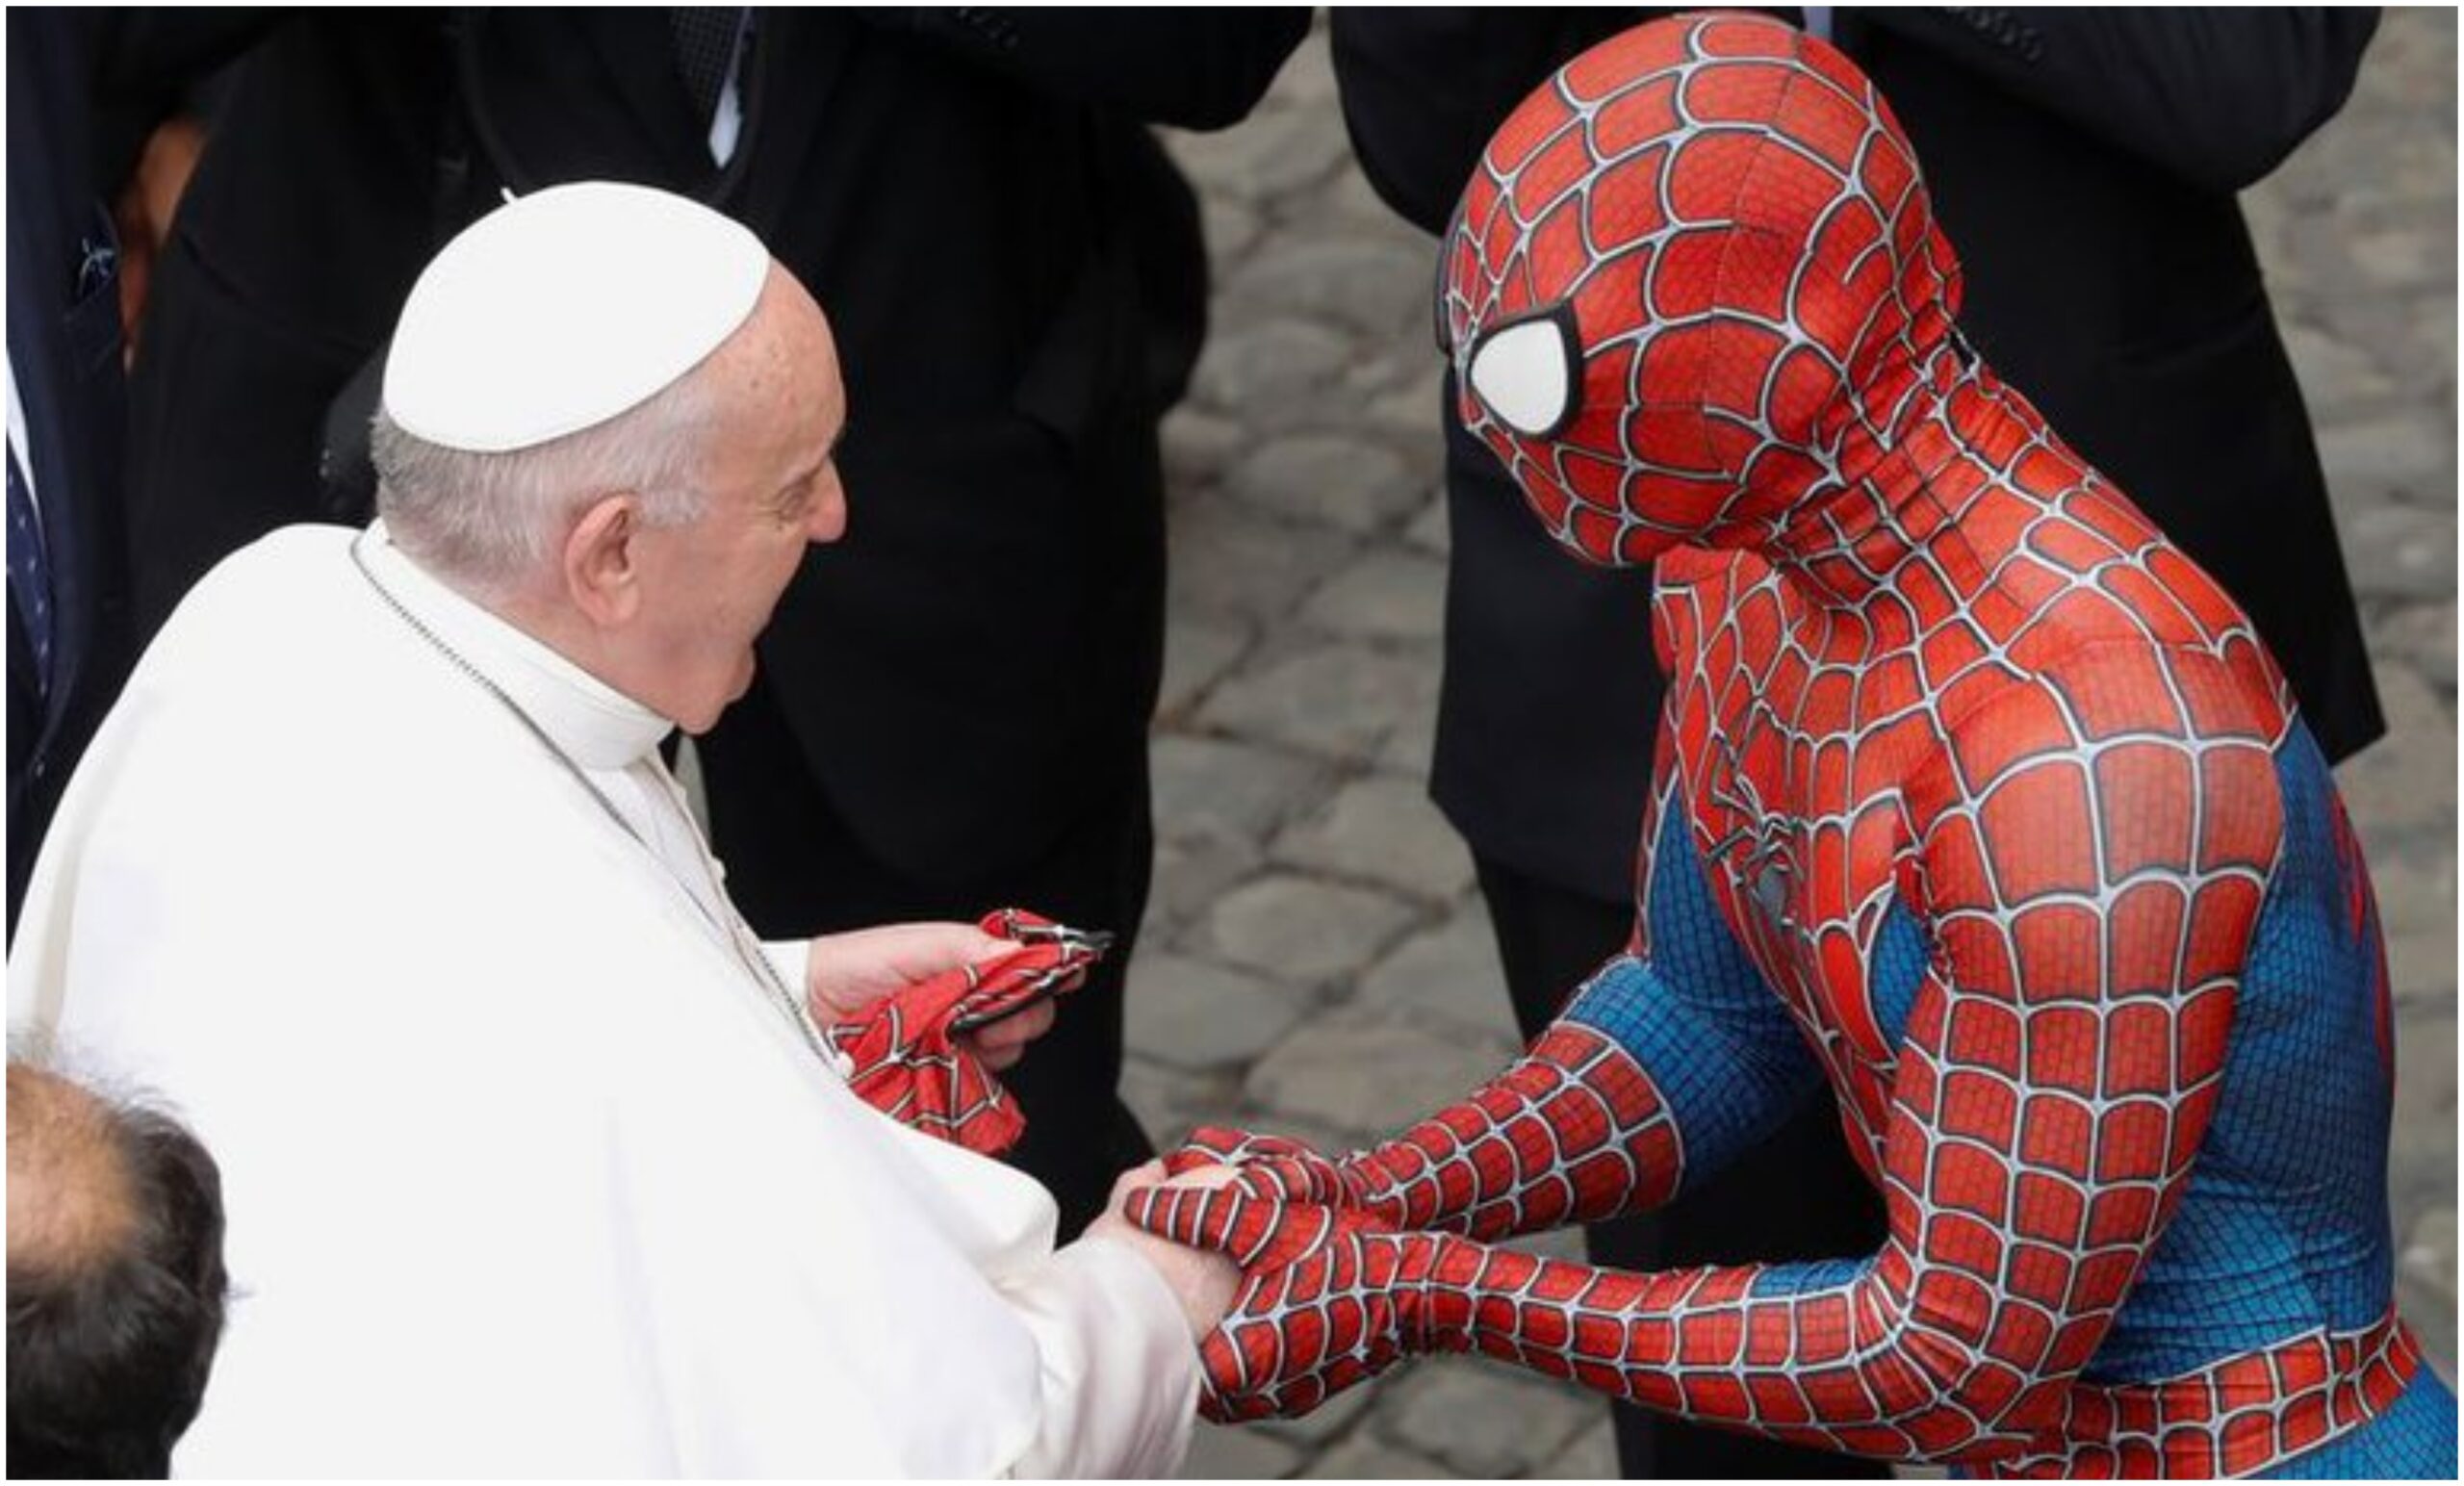 Visita Spiderman al papa Francisco; intercambian máscara y rosario